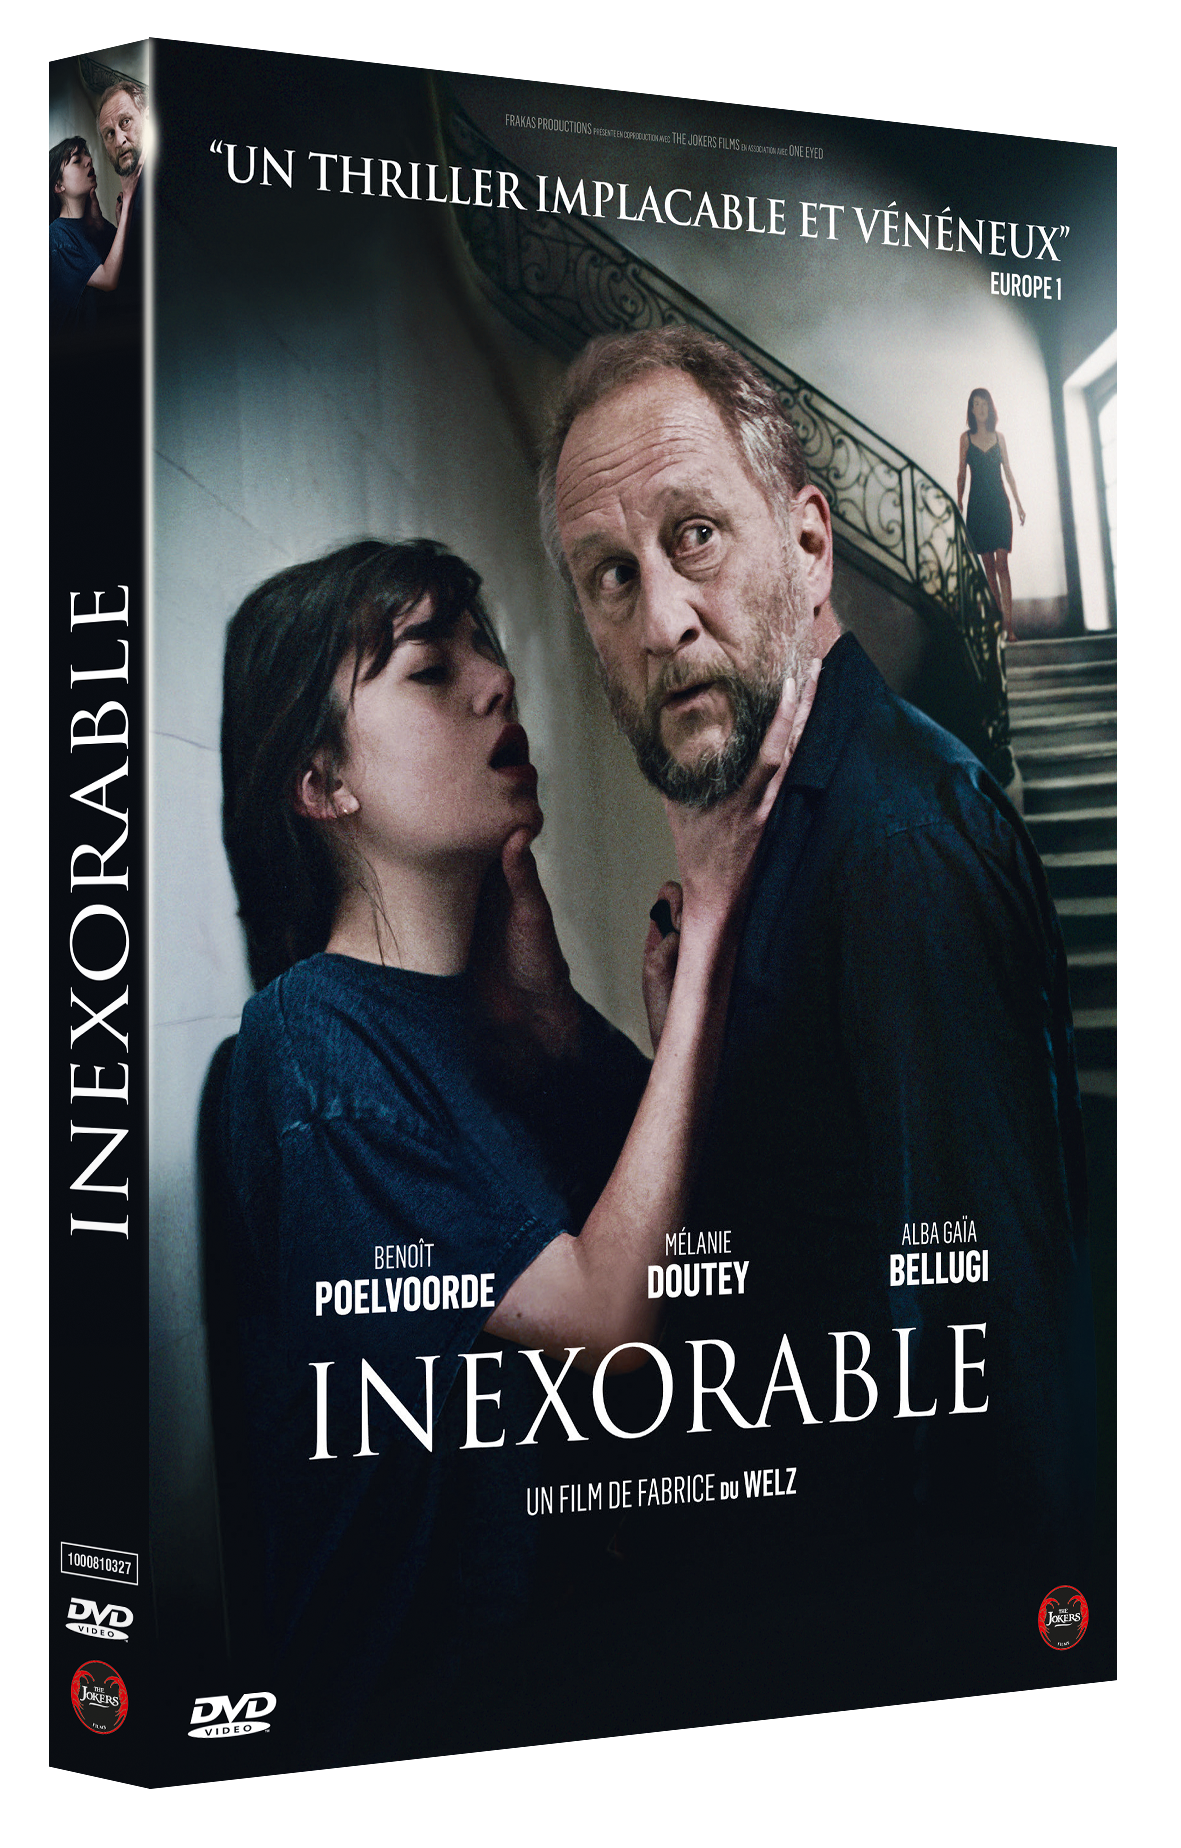 DVD "Inexorable"